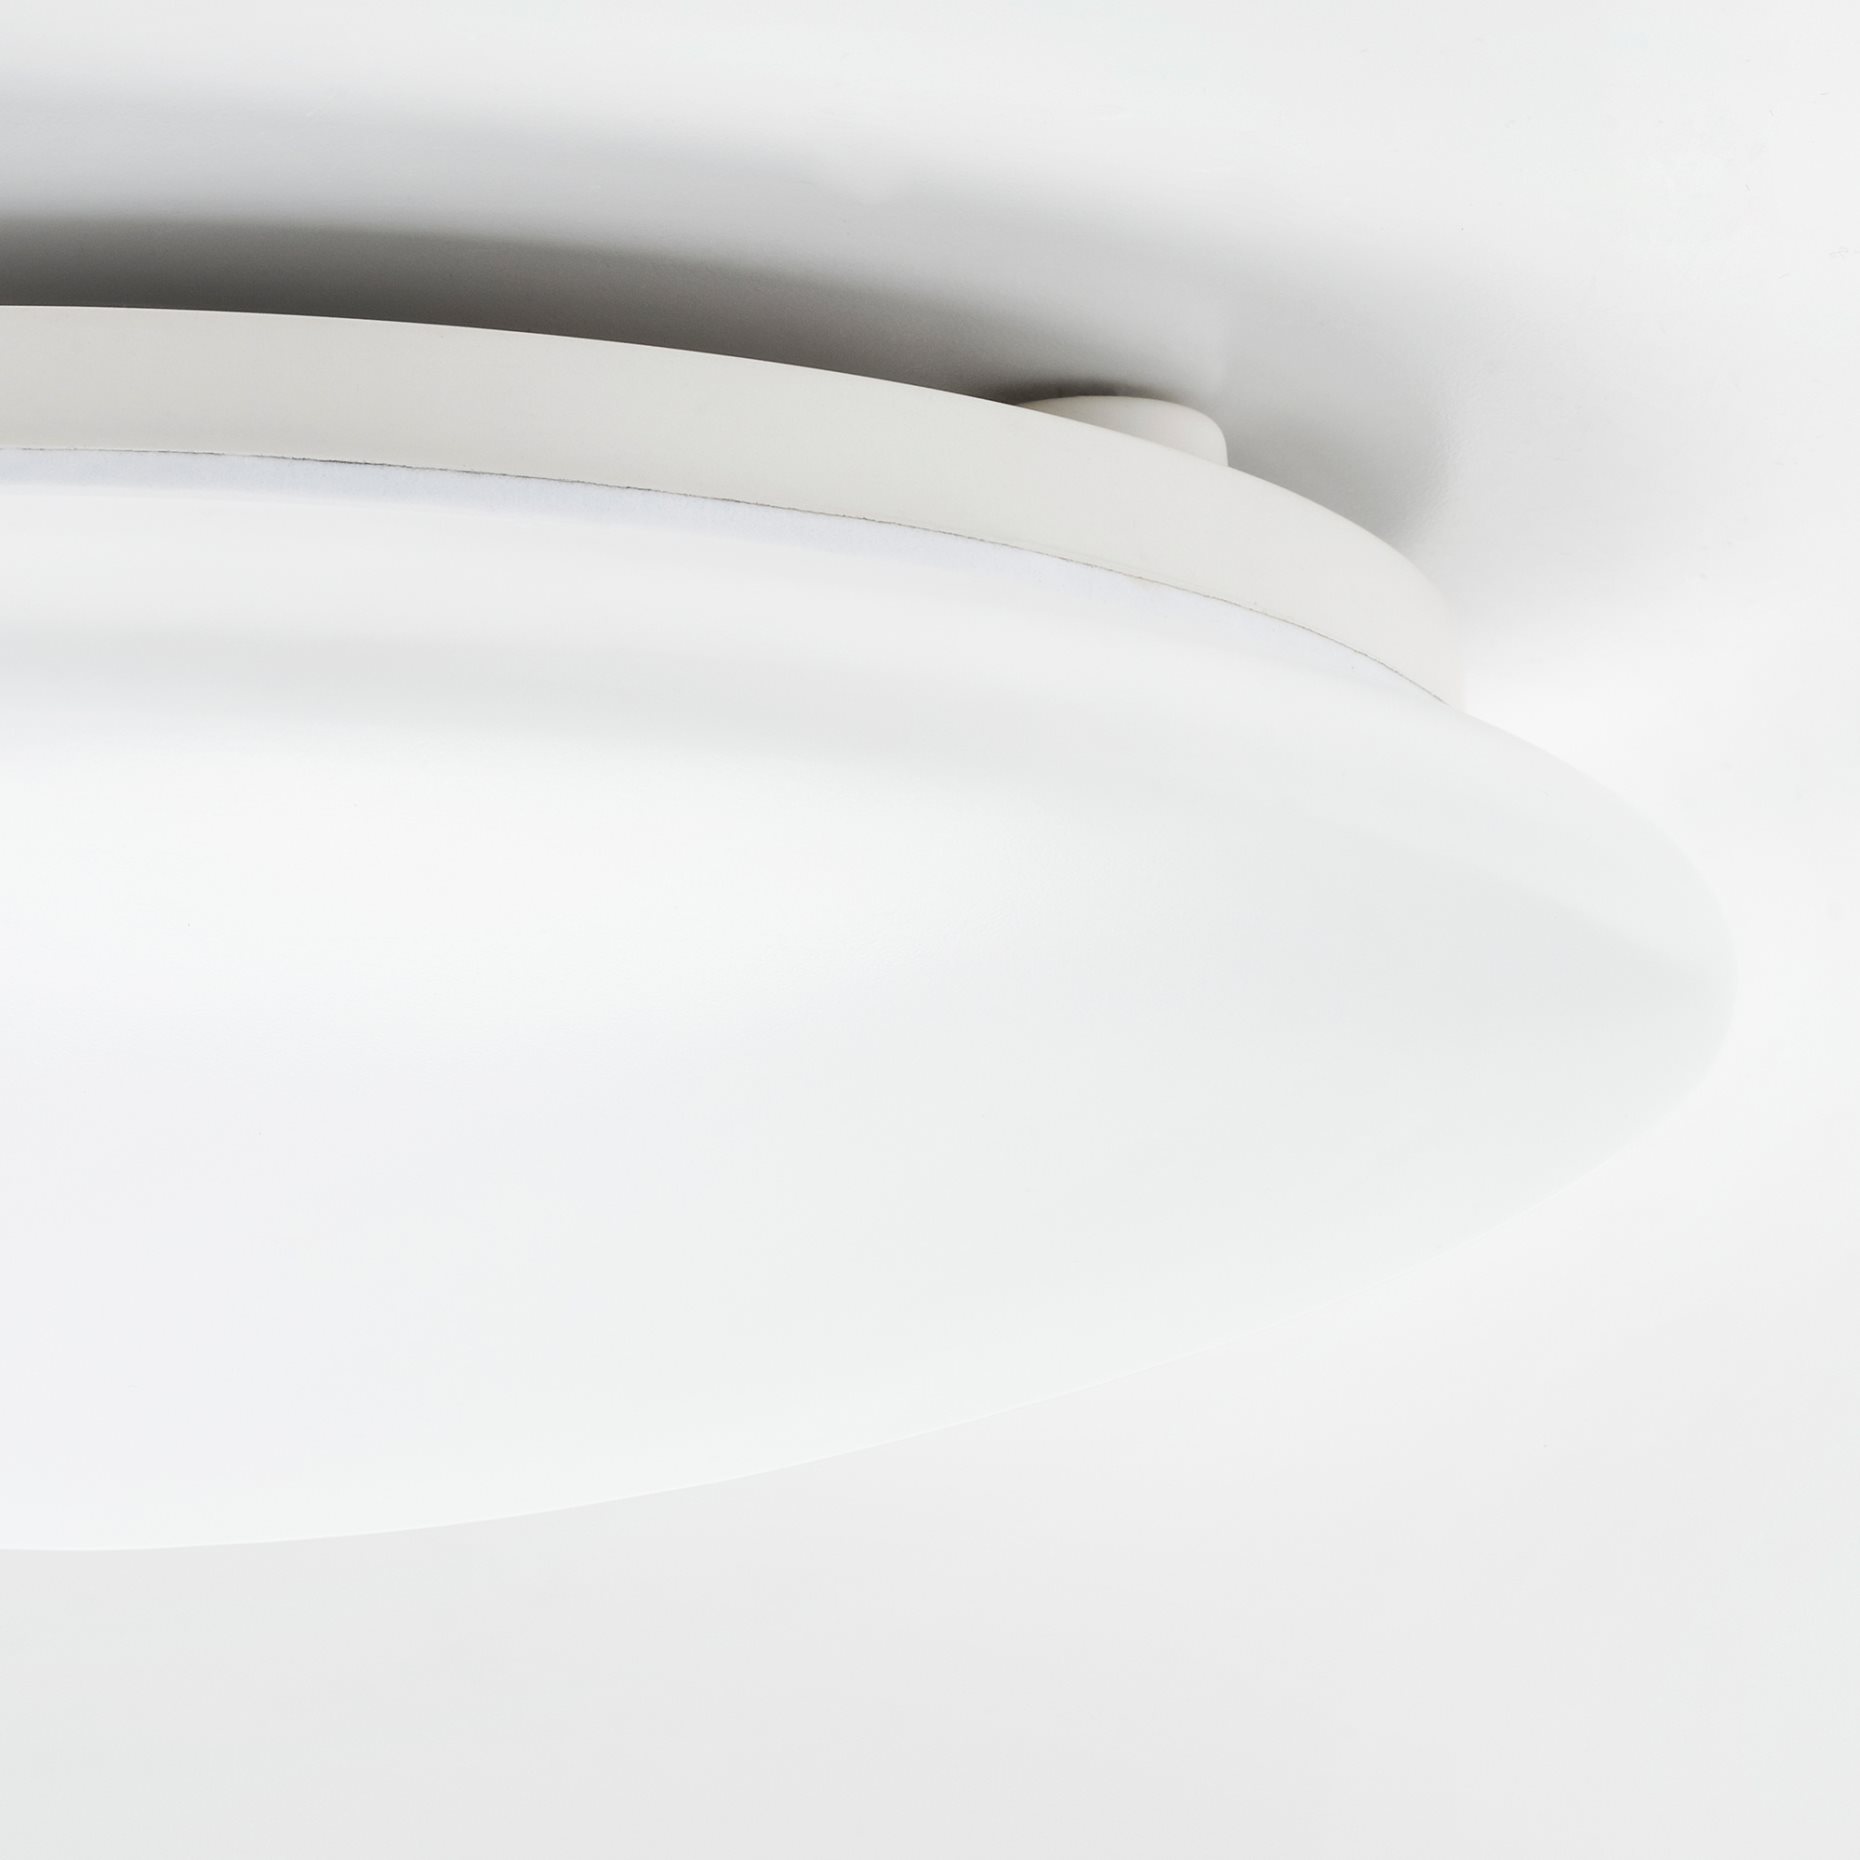 BARLAST, φωτιστικό οροφής/τοίχου με ενσωματωμένο φωτισμό LED, 25 cm, 005.259.08